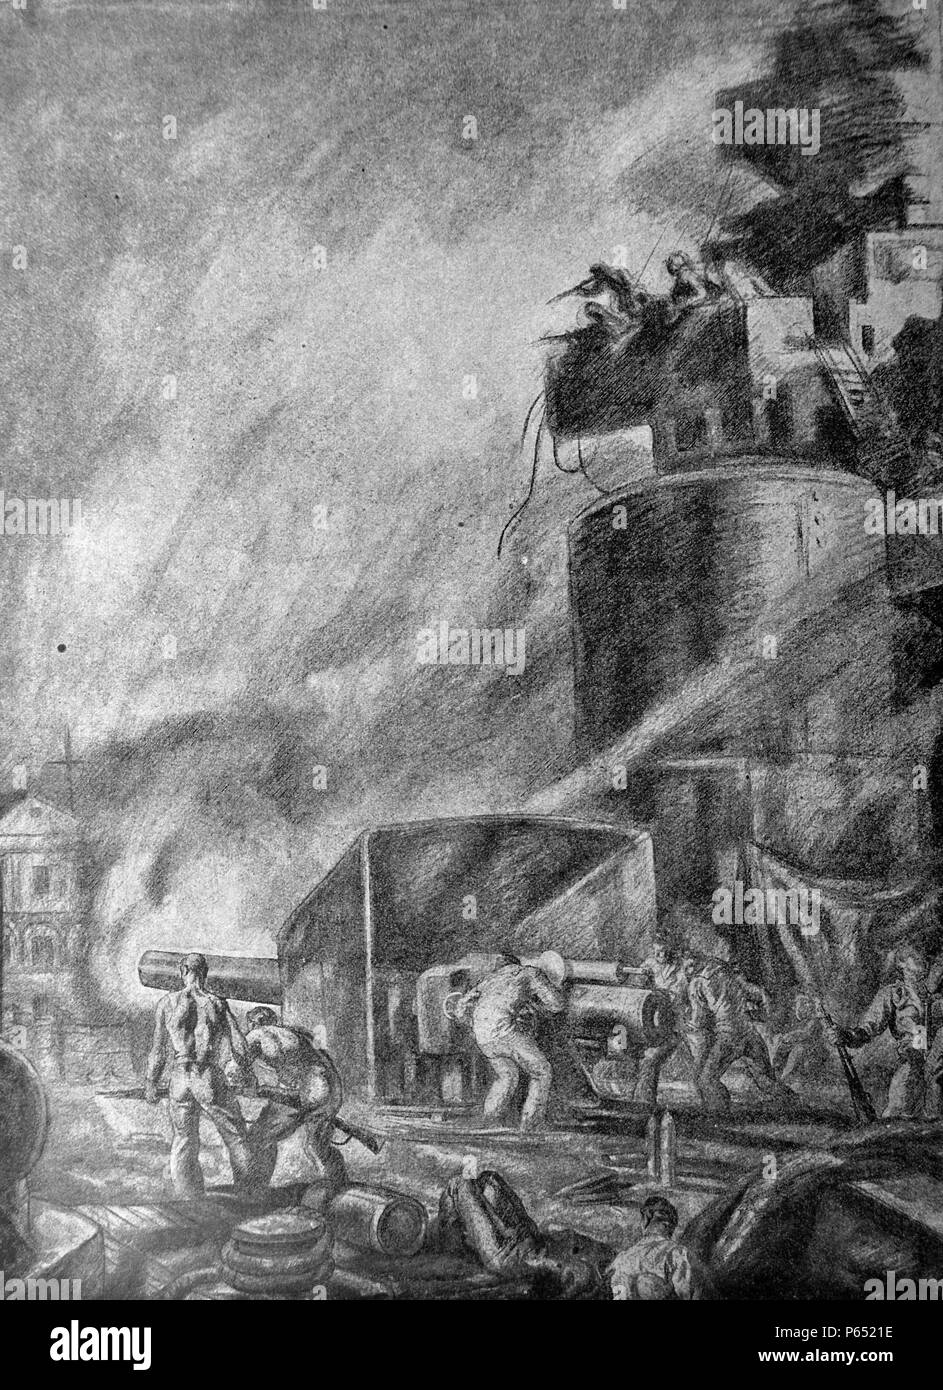 Guerra civile spagnola: repubblicani di mezzi navali cannone spara contro forze nationalst sulla riva, disegno di C. Saenz de Tejada Foto Stock